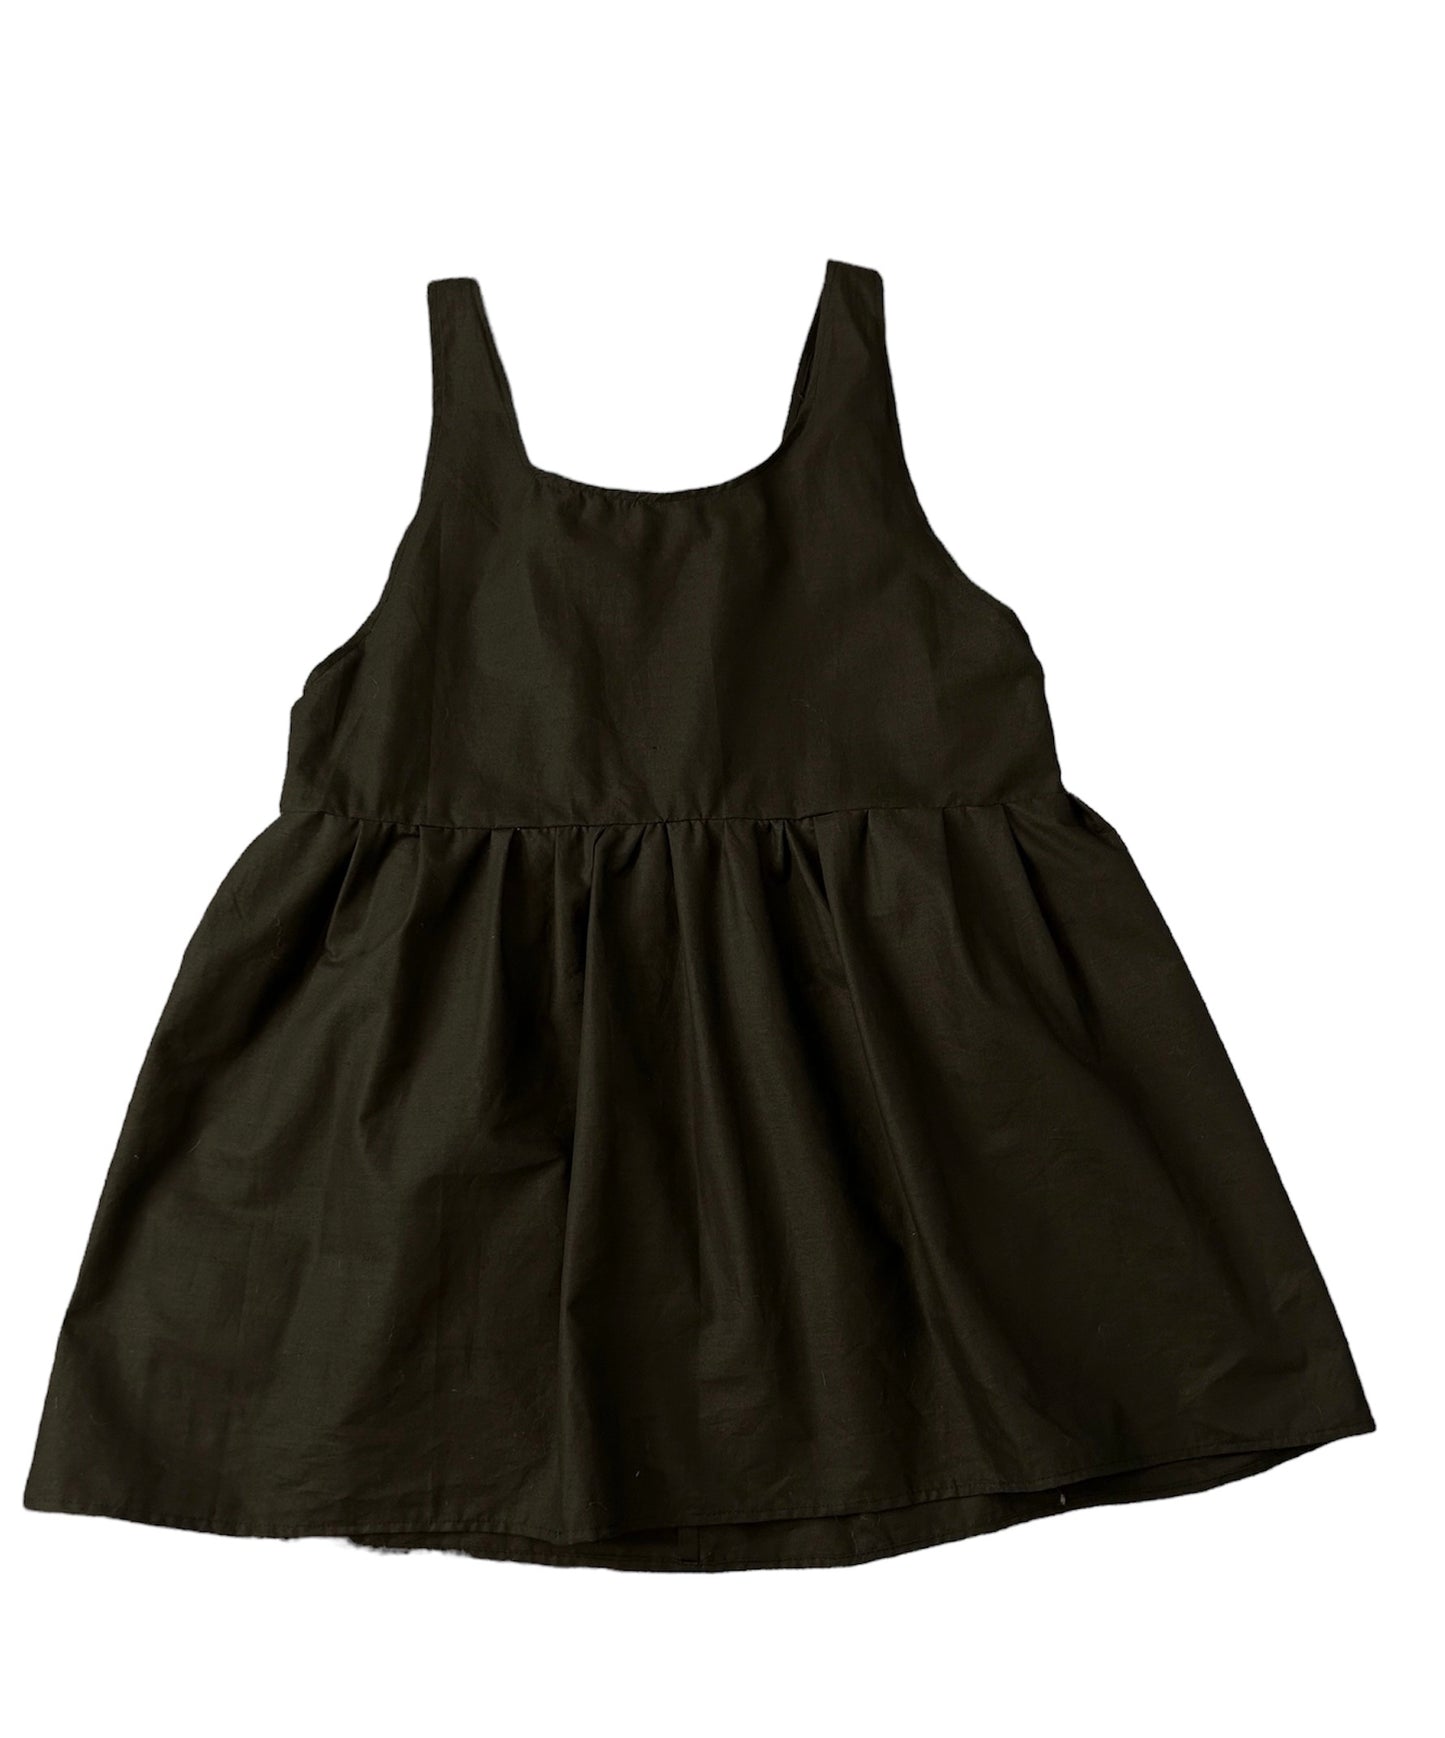 Pitch Black Mini Dress